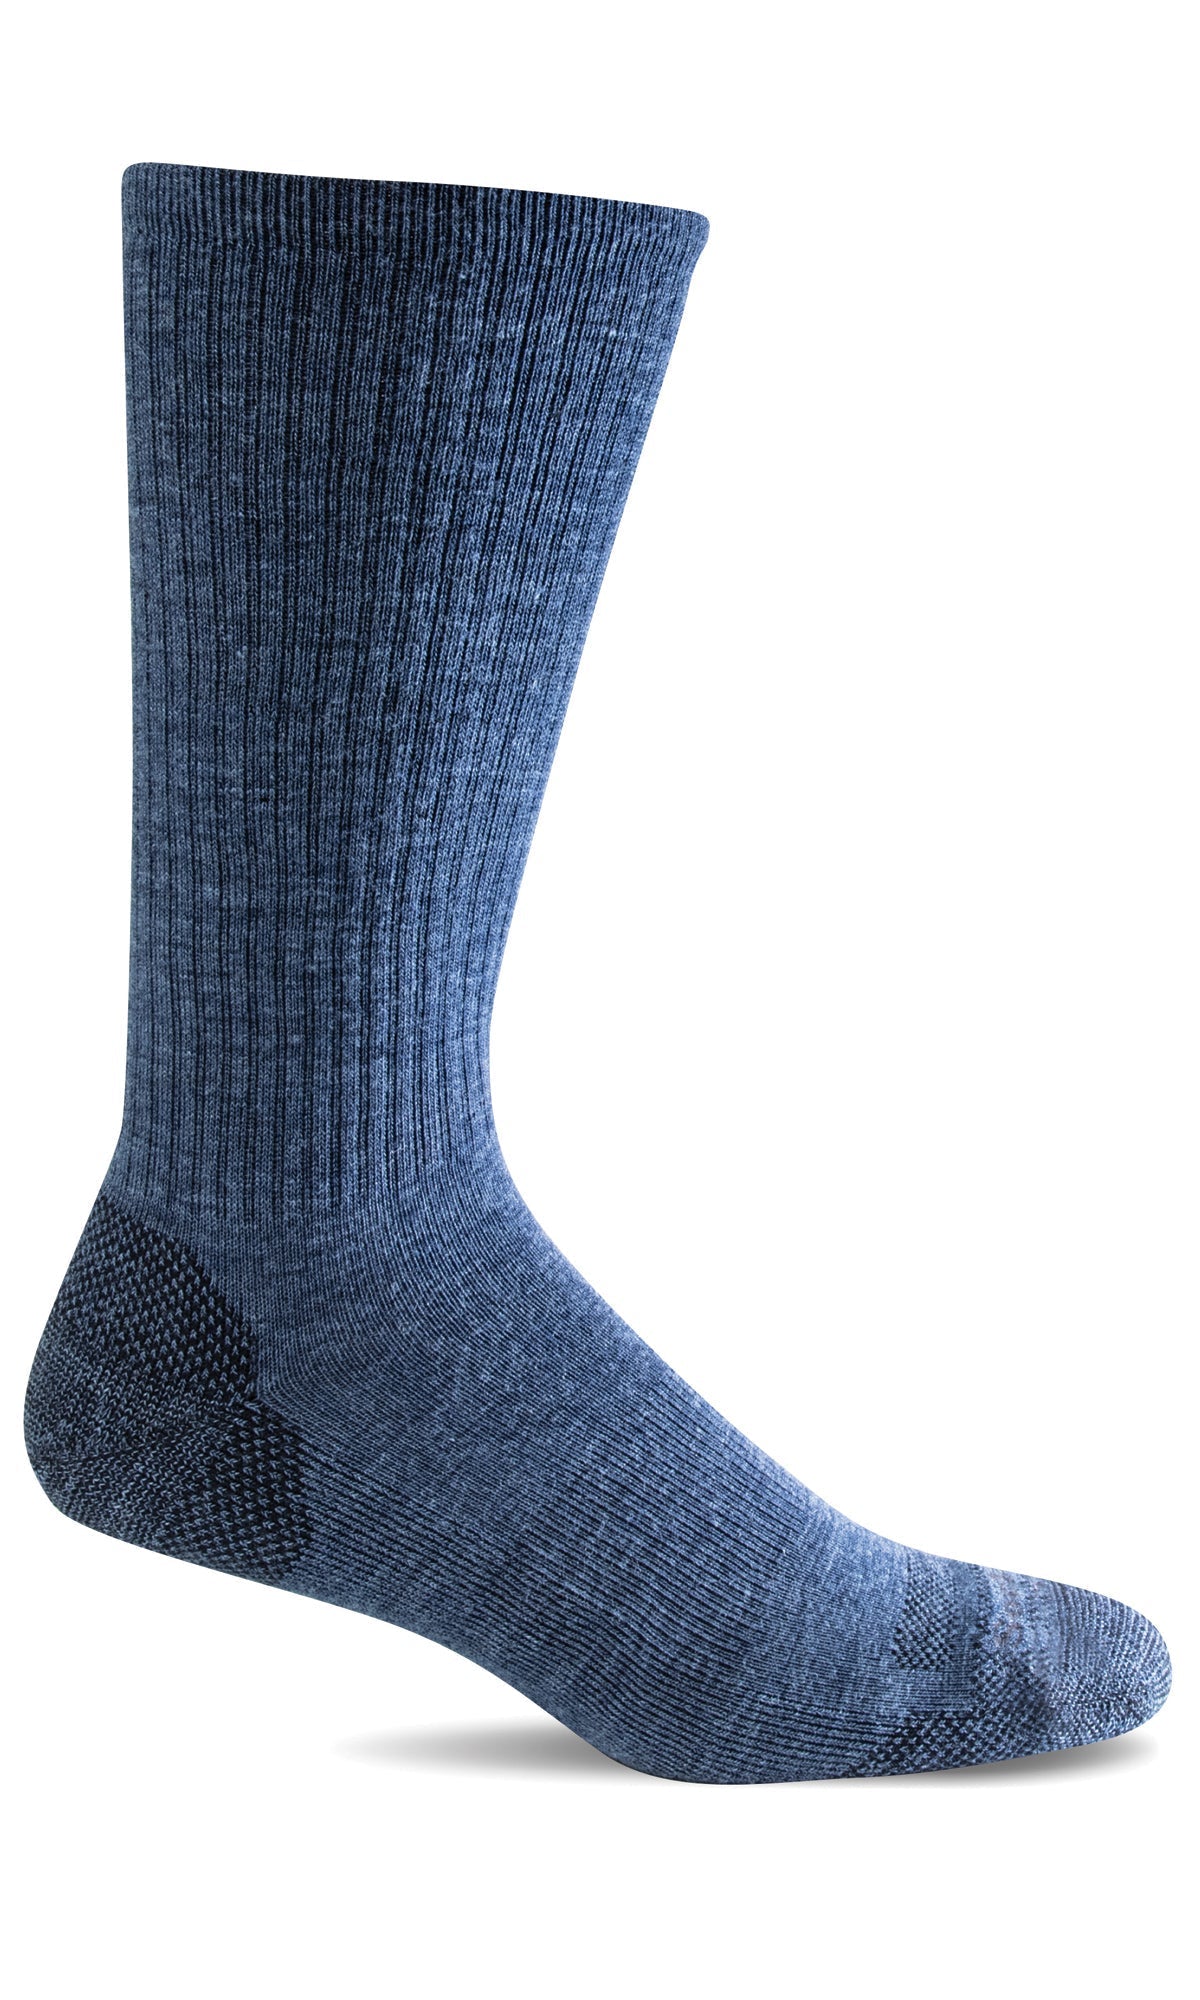 Men's Montrose II | Essential Comfort Socks - Merino Wool Essential Comfort - Sockwell